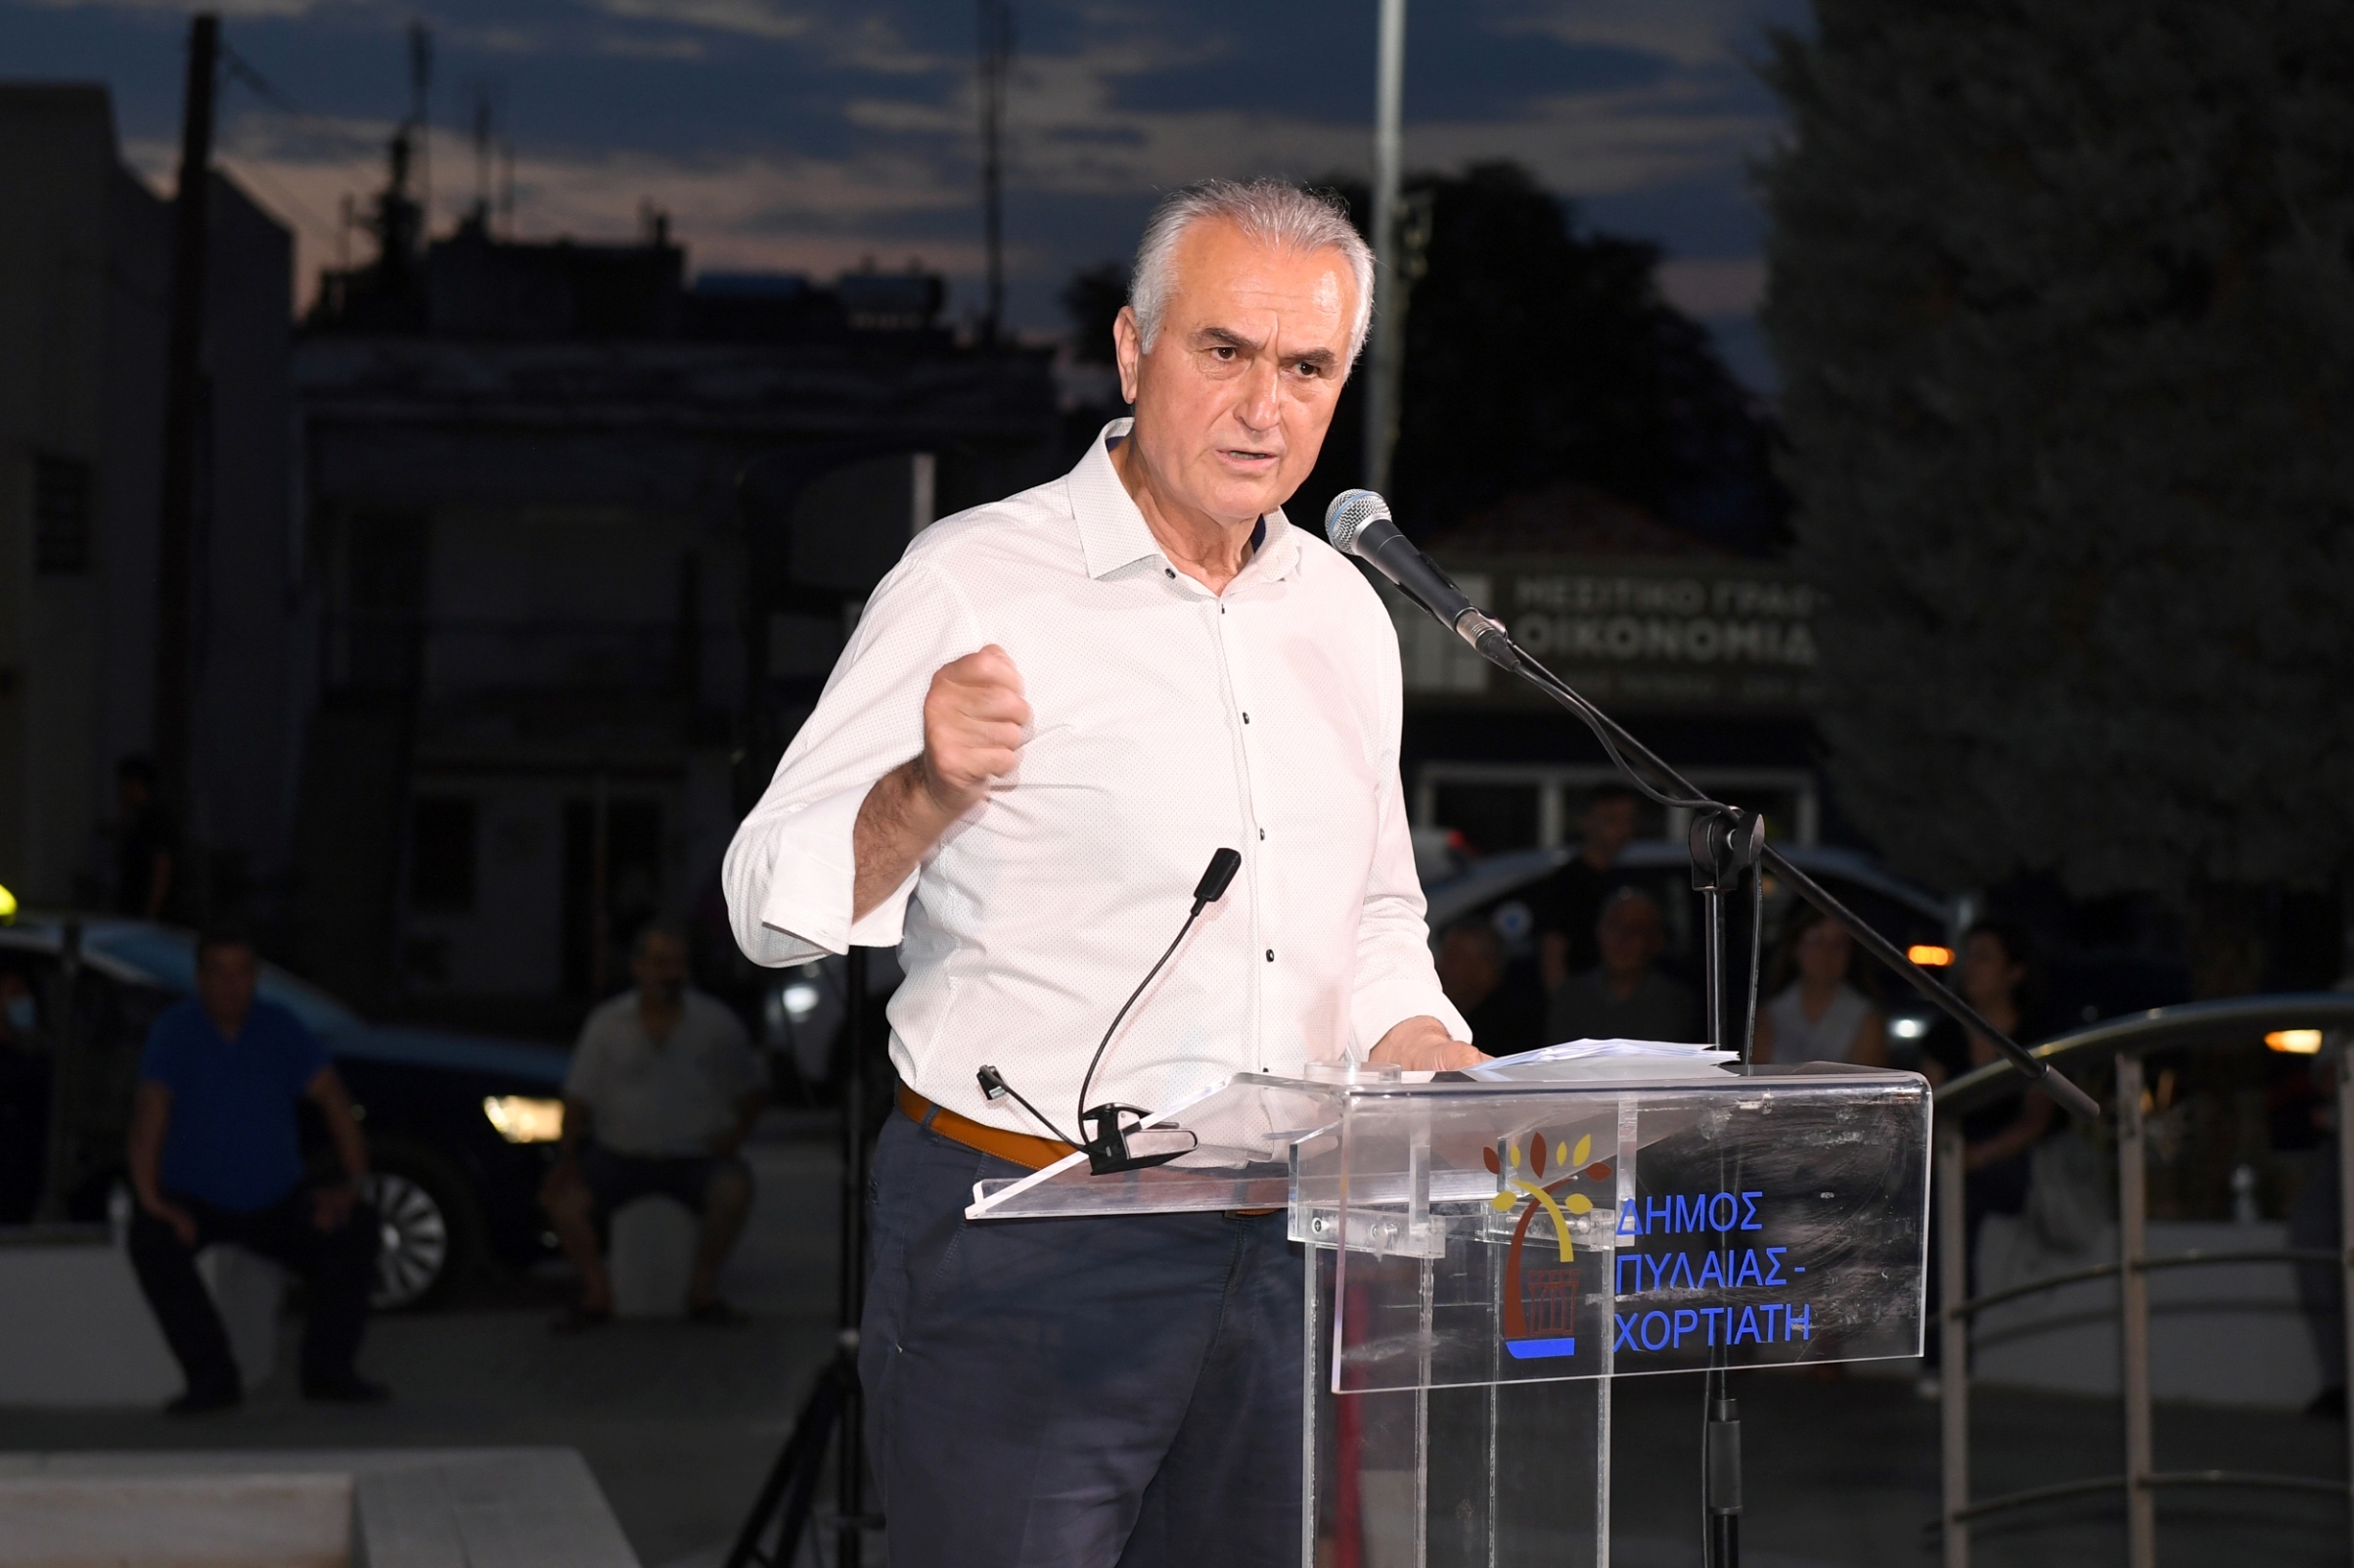 Σάββας Αναστασιάδης: ” Η χώρα χρειάζεται ισχυρή και στιβαρή Κυβέρνηση”